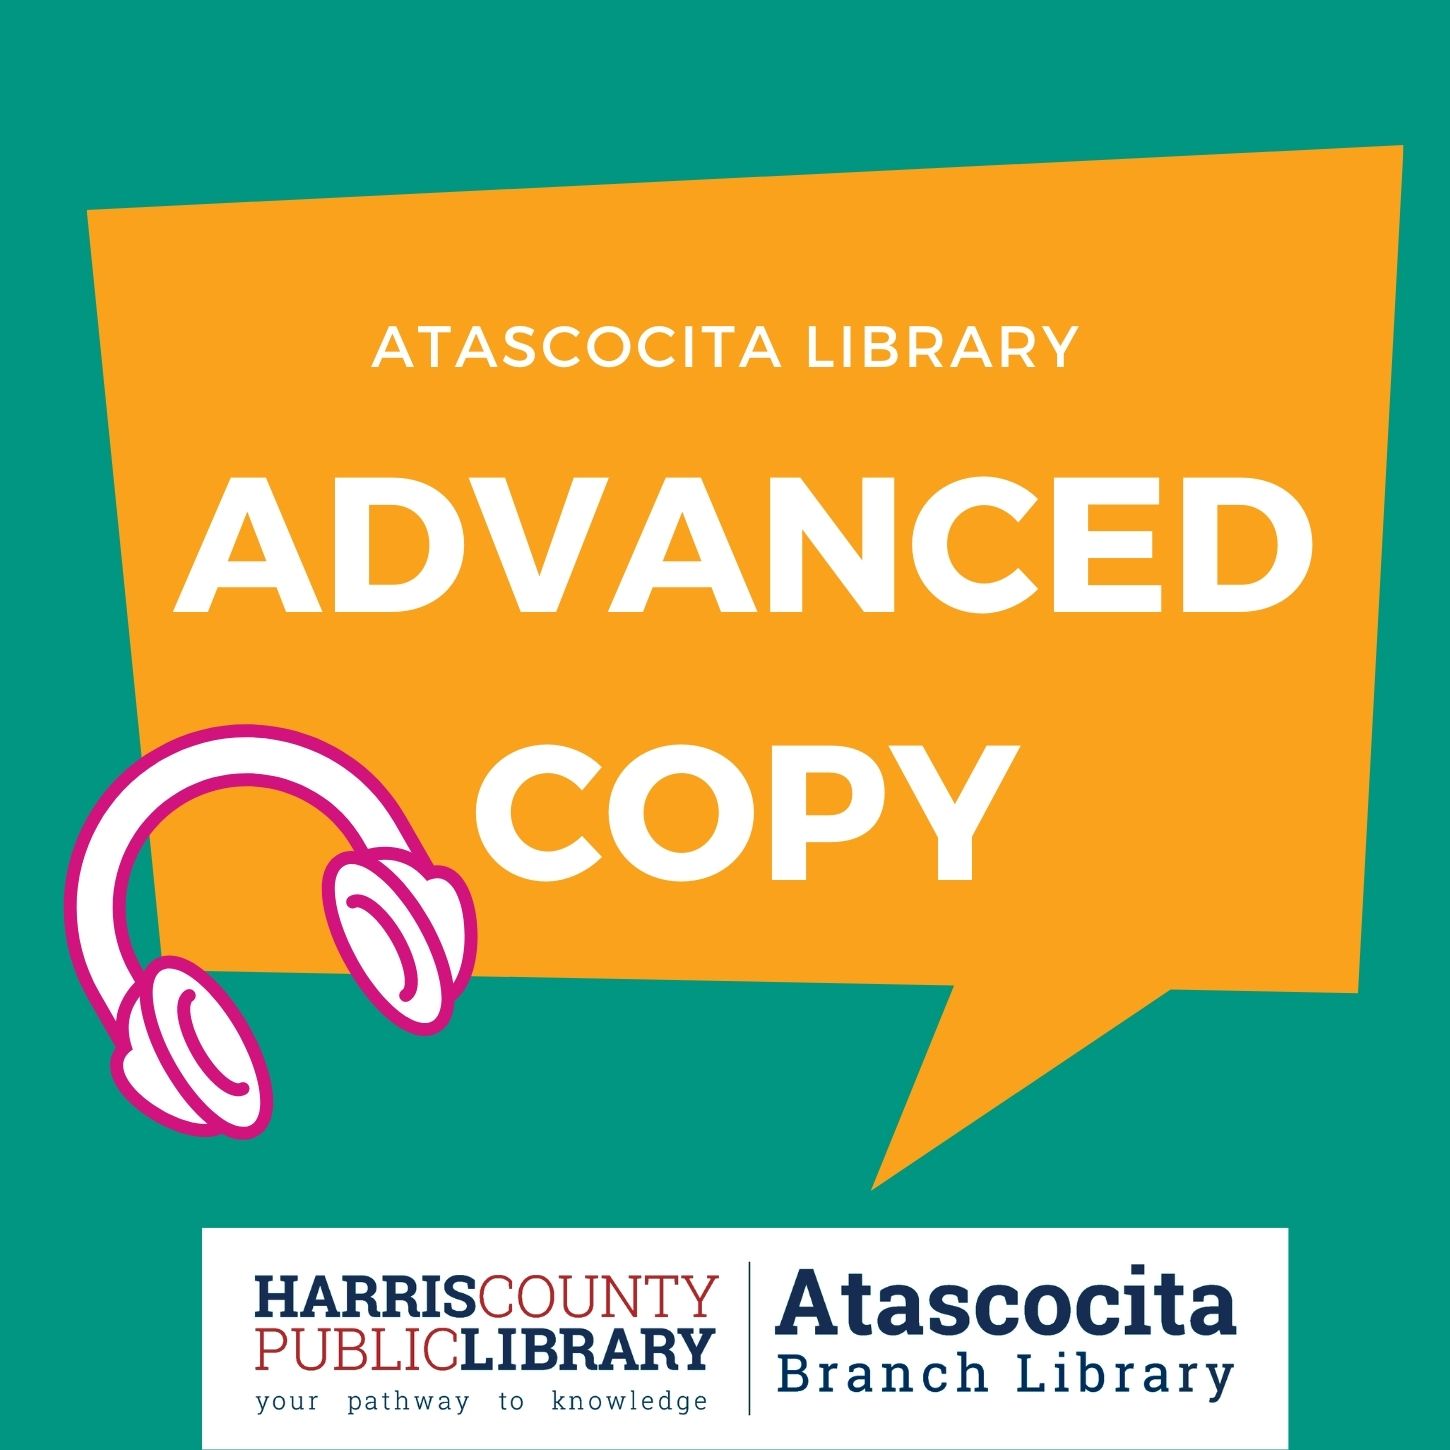 Atascocita Library Advanced Copy